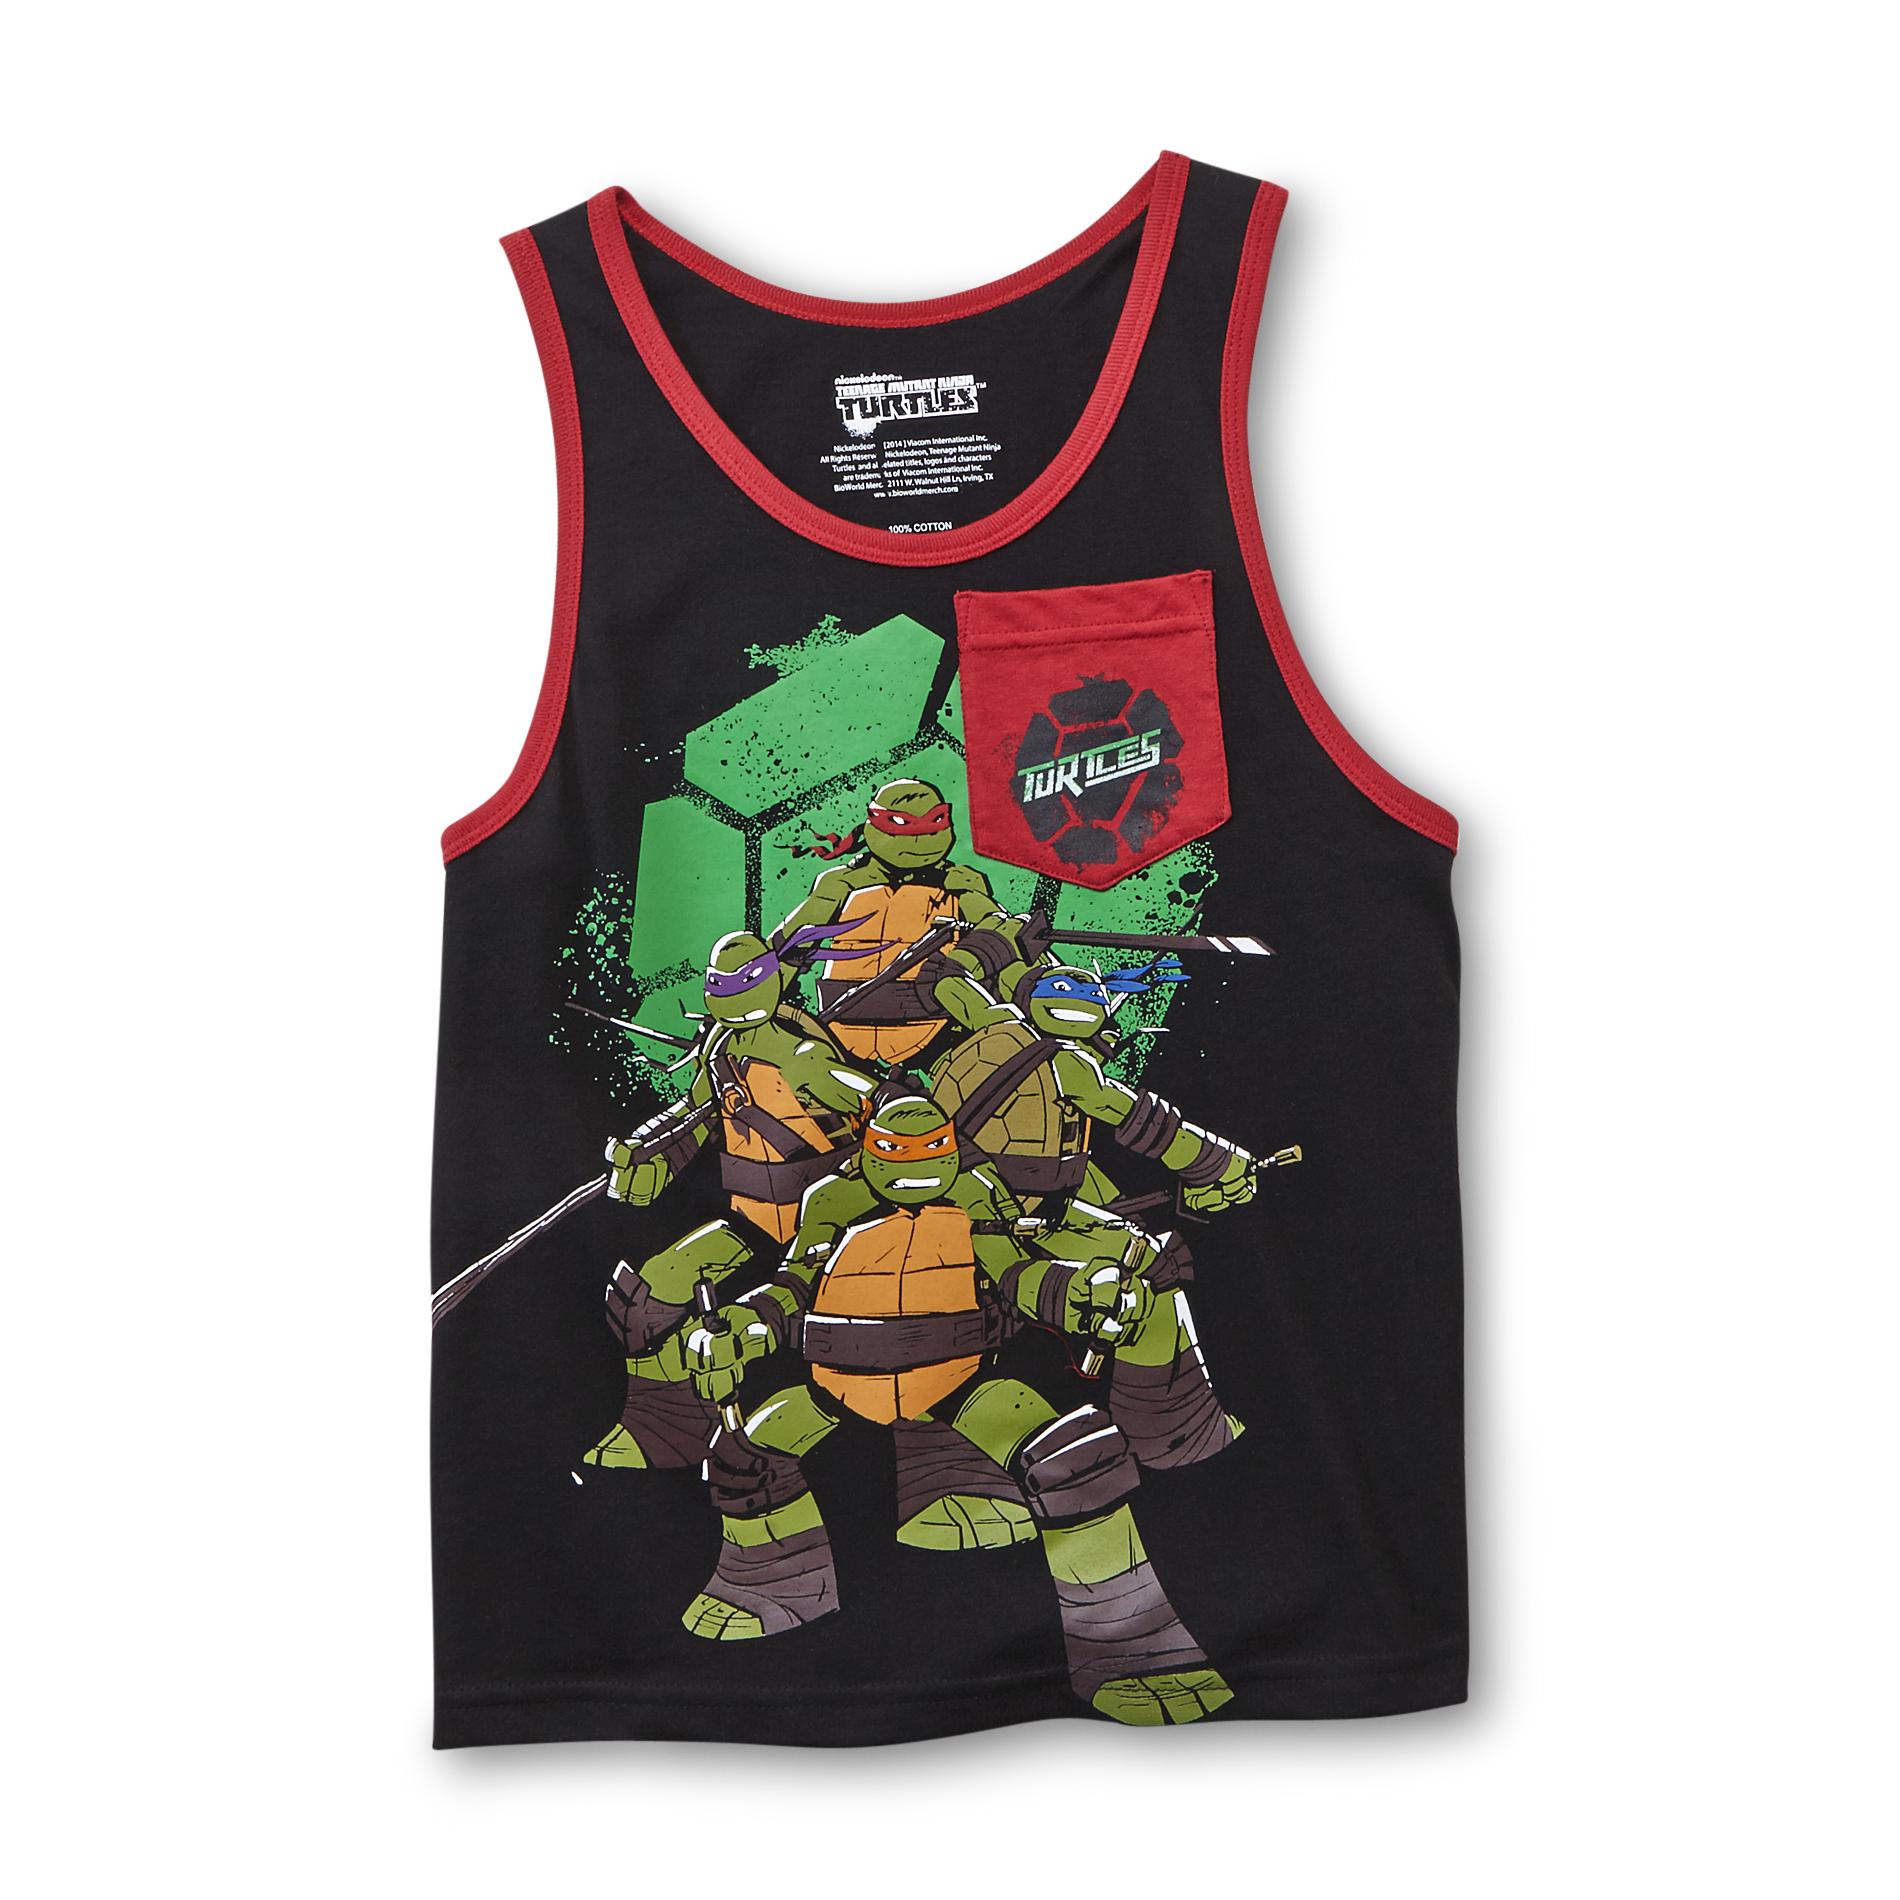 Nickelodeon Teenage Mutant Ninja Turtles Boy's Pocket Tank Top